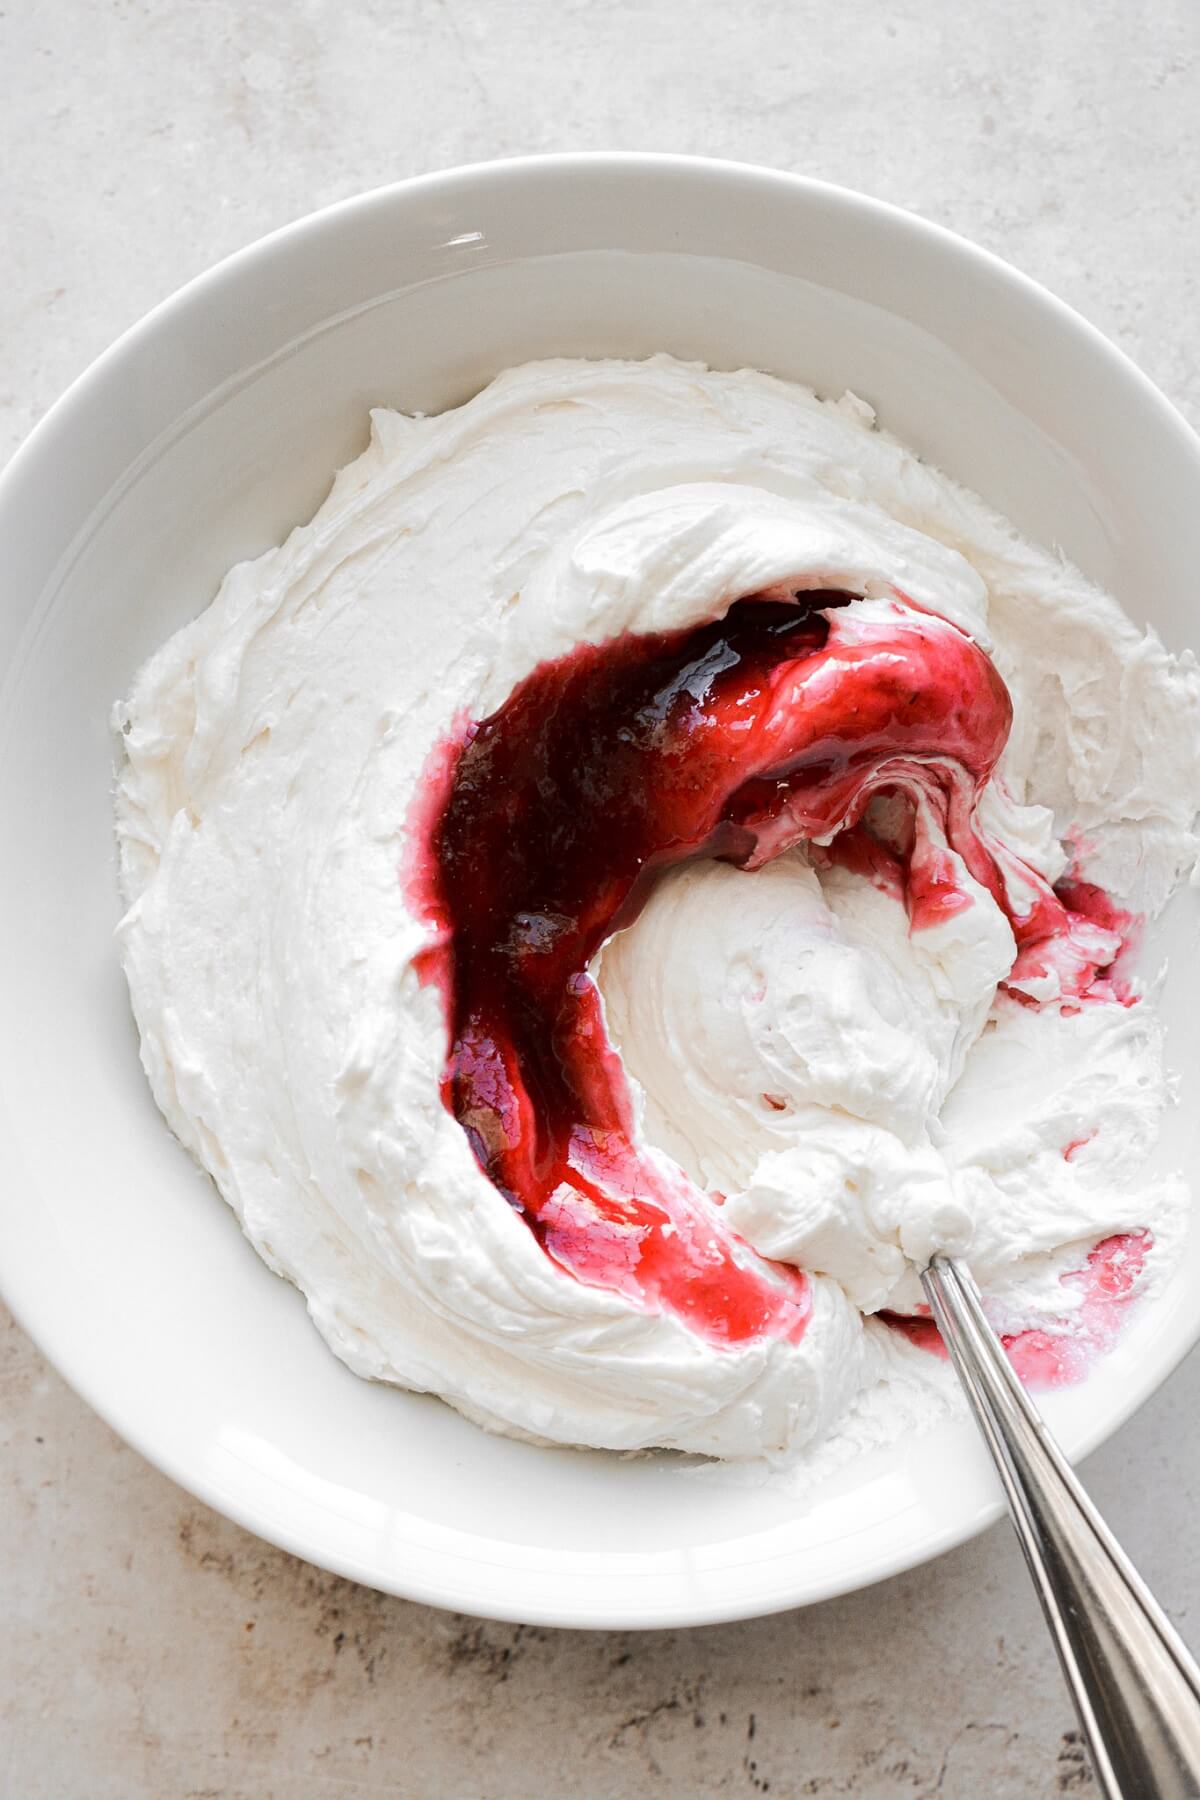 Raspberry jam swirled into vanilla buttercream.